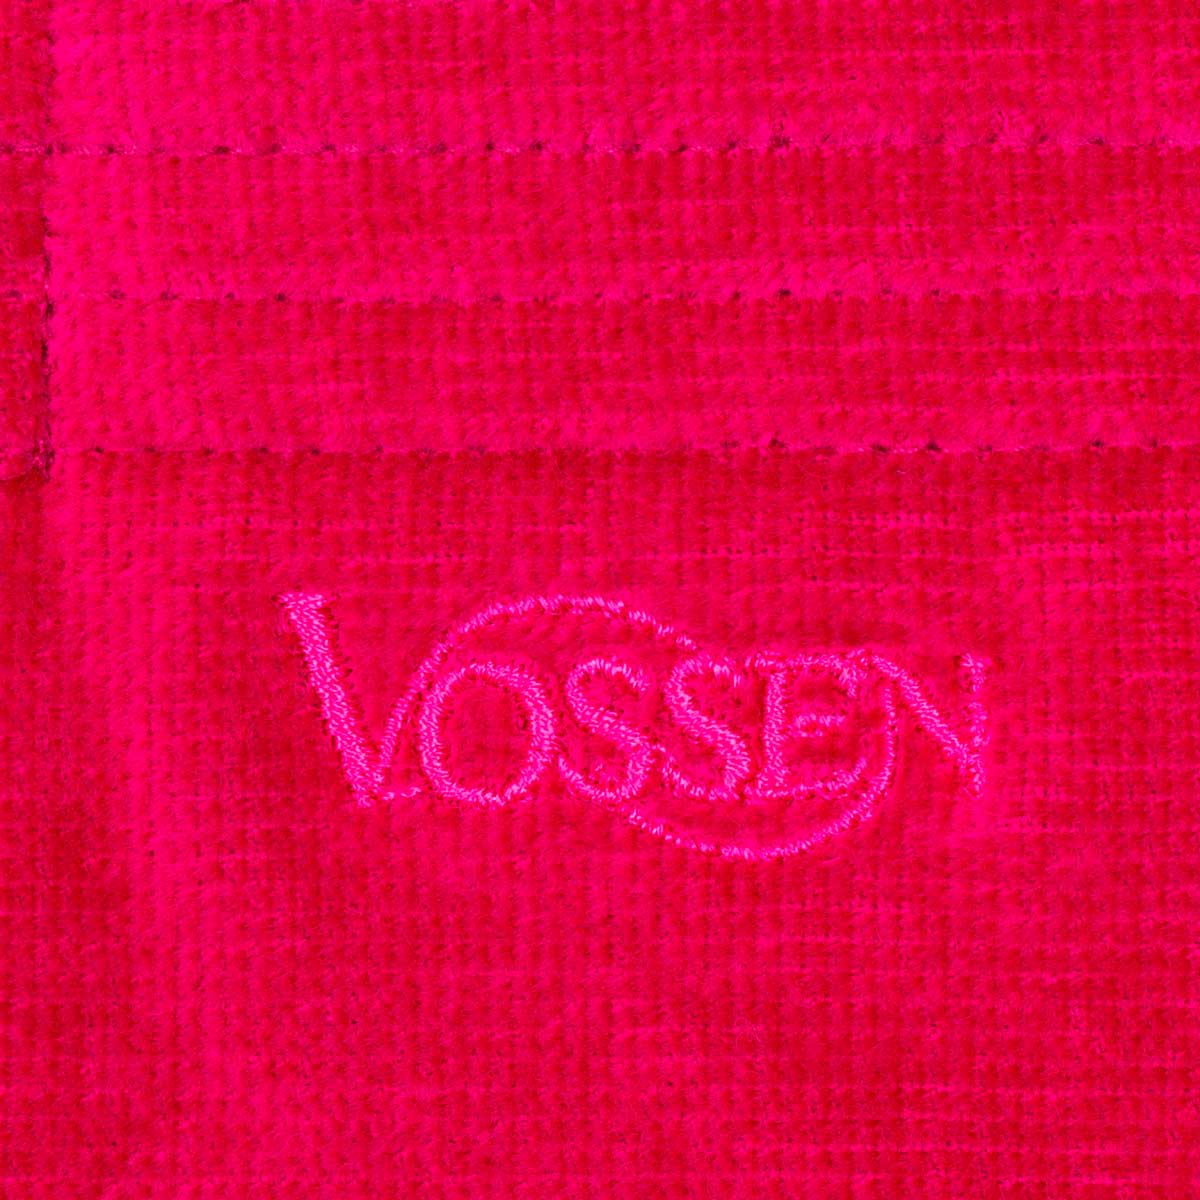 Халат велюровый с капюшоном Vossen Texas размер L, фуксия Vossen 7990 05112 3770 4652 L - фото 4